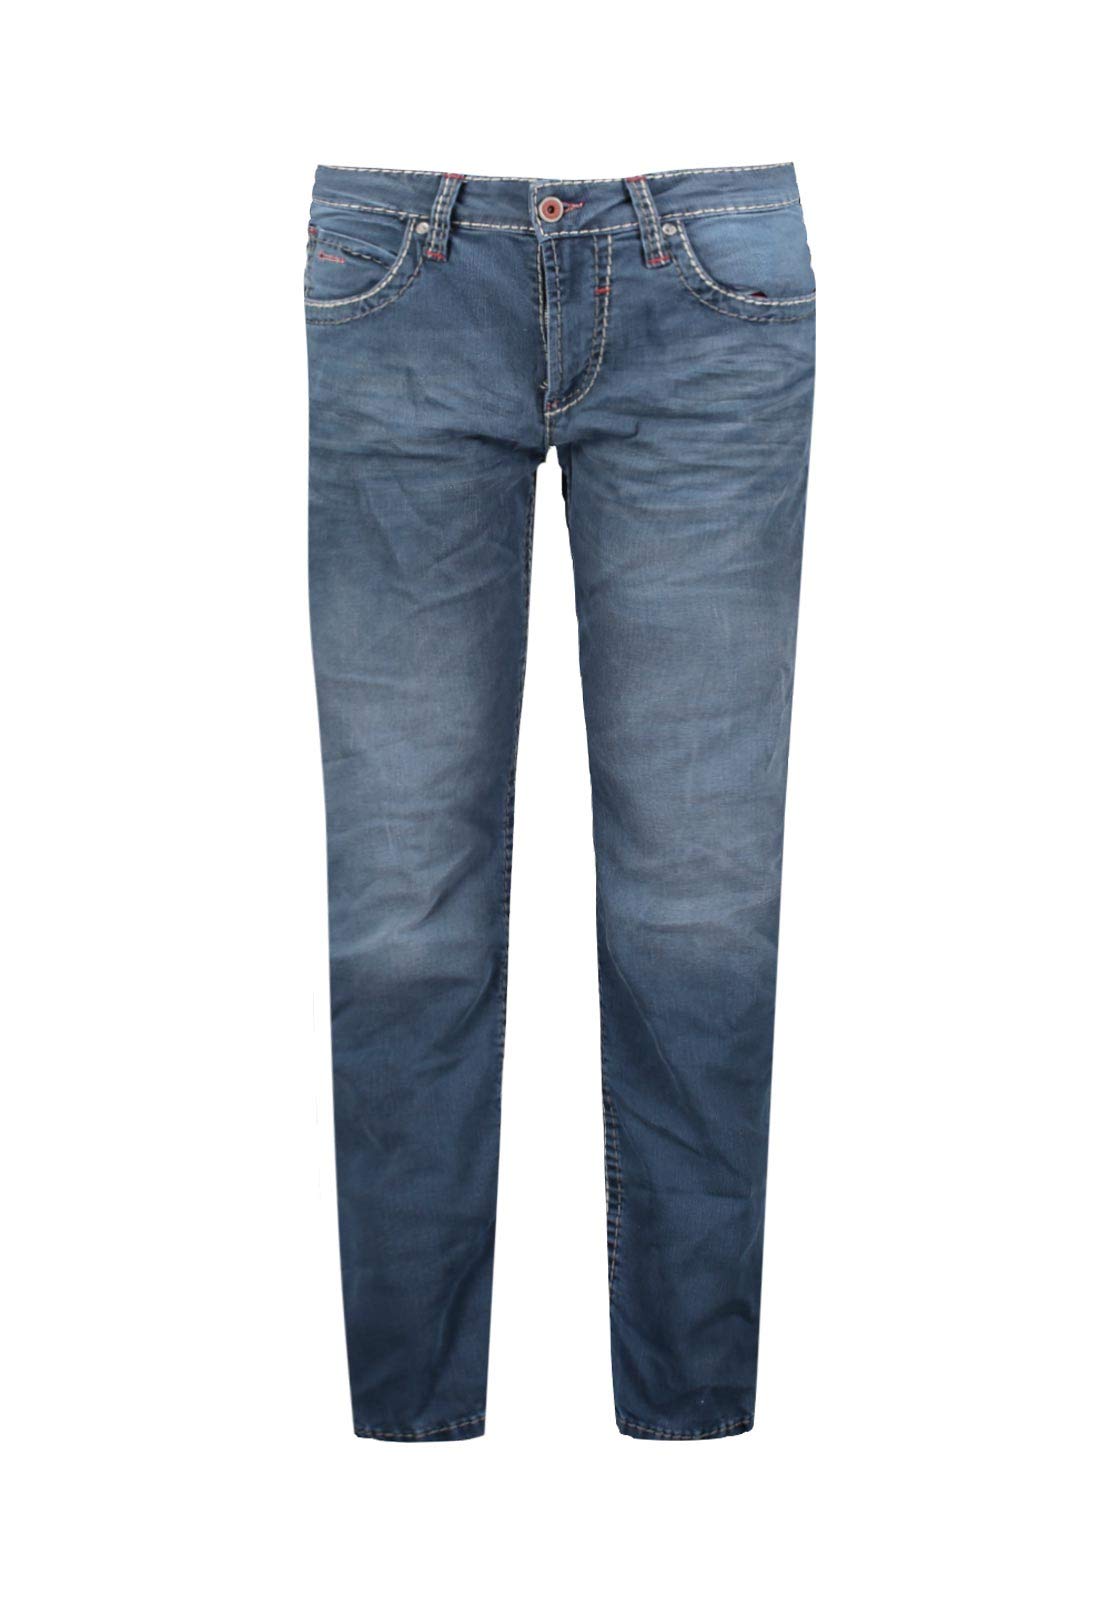 Camp David Herren Jeans NI:CO mit Vintage-Waschung und Breiten Nähten Old Blue Used 33 34